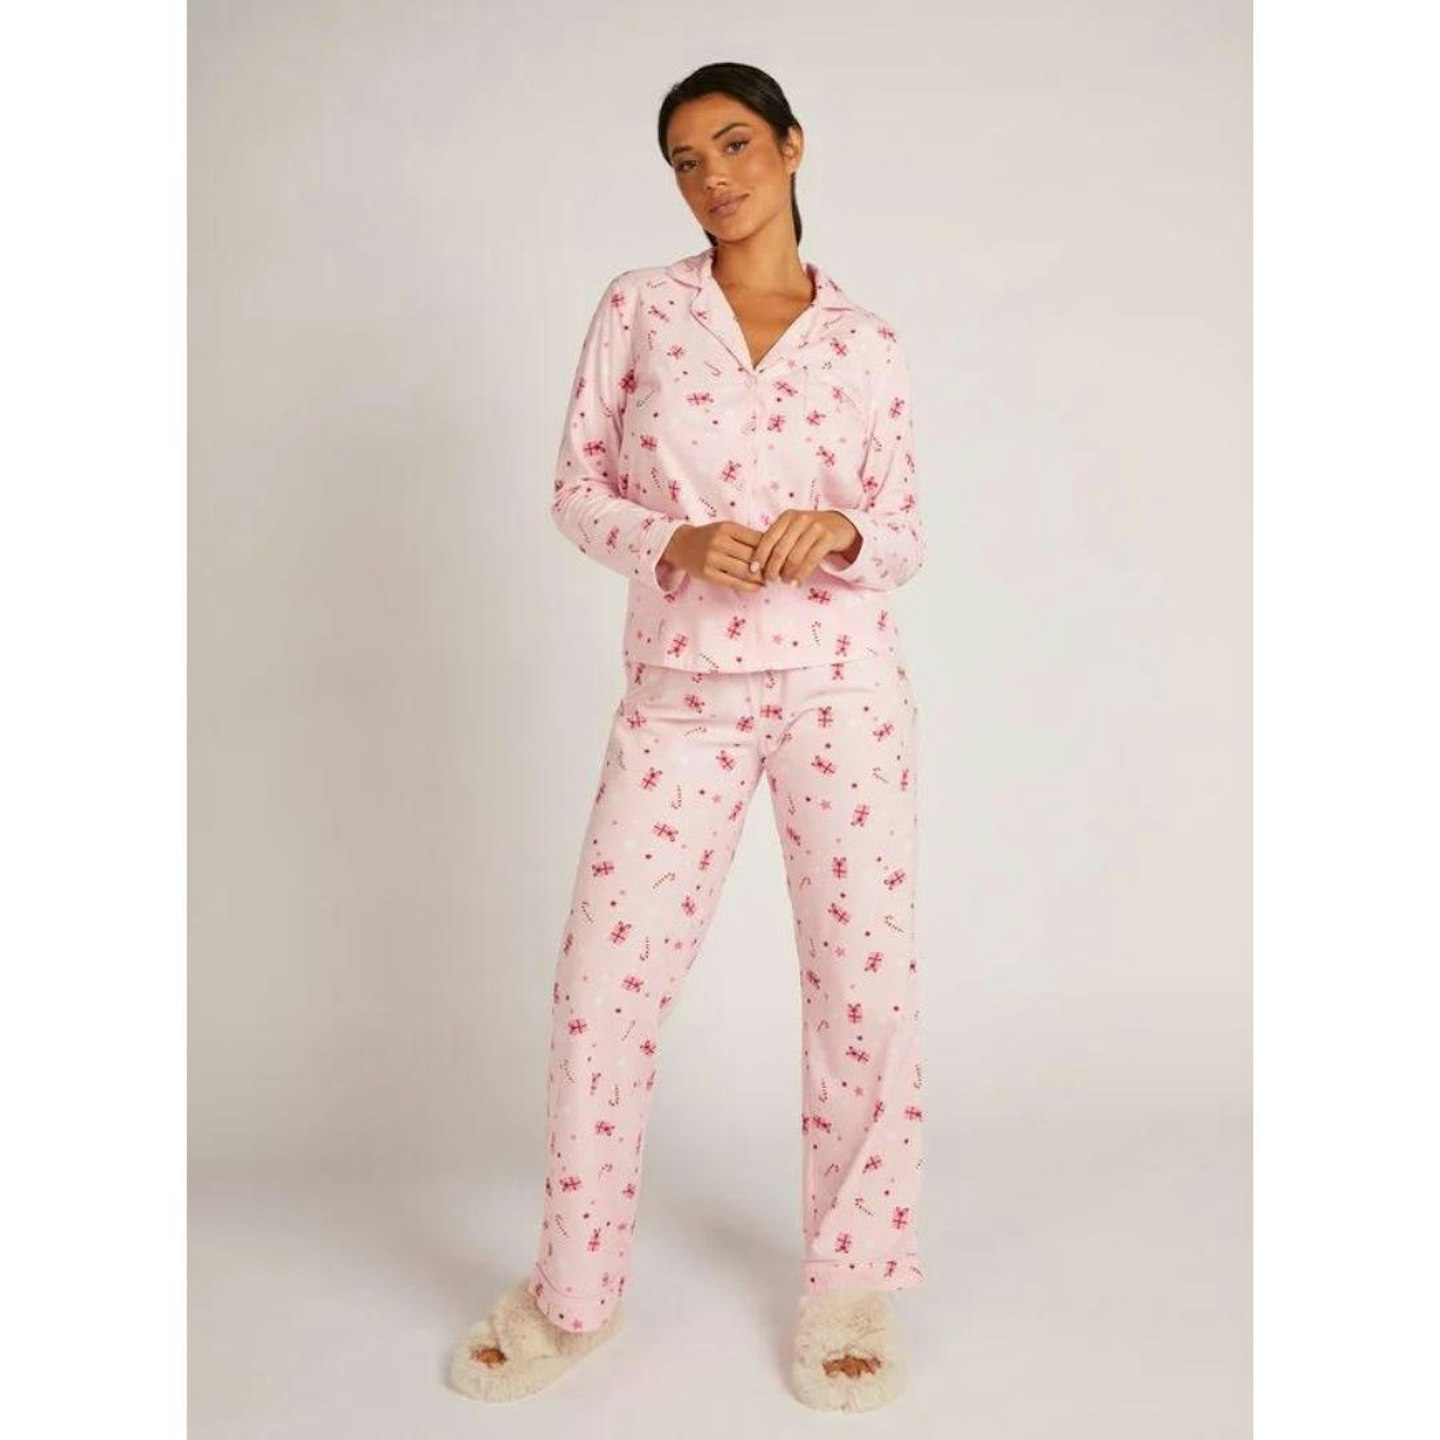 Family Christmas Pyjamas: Present fleece pyjamas in a bag - Pink Mix